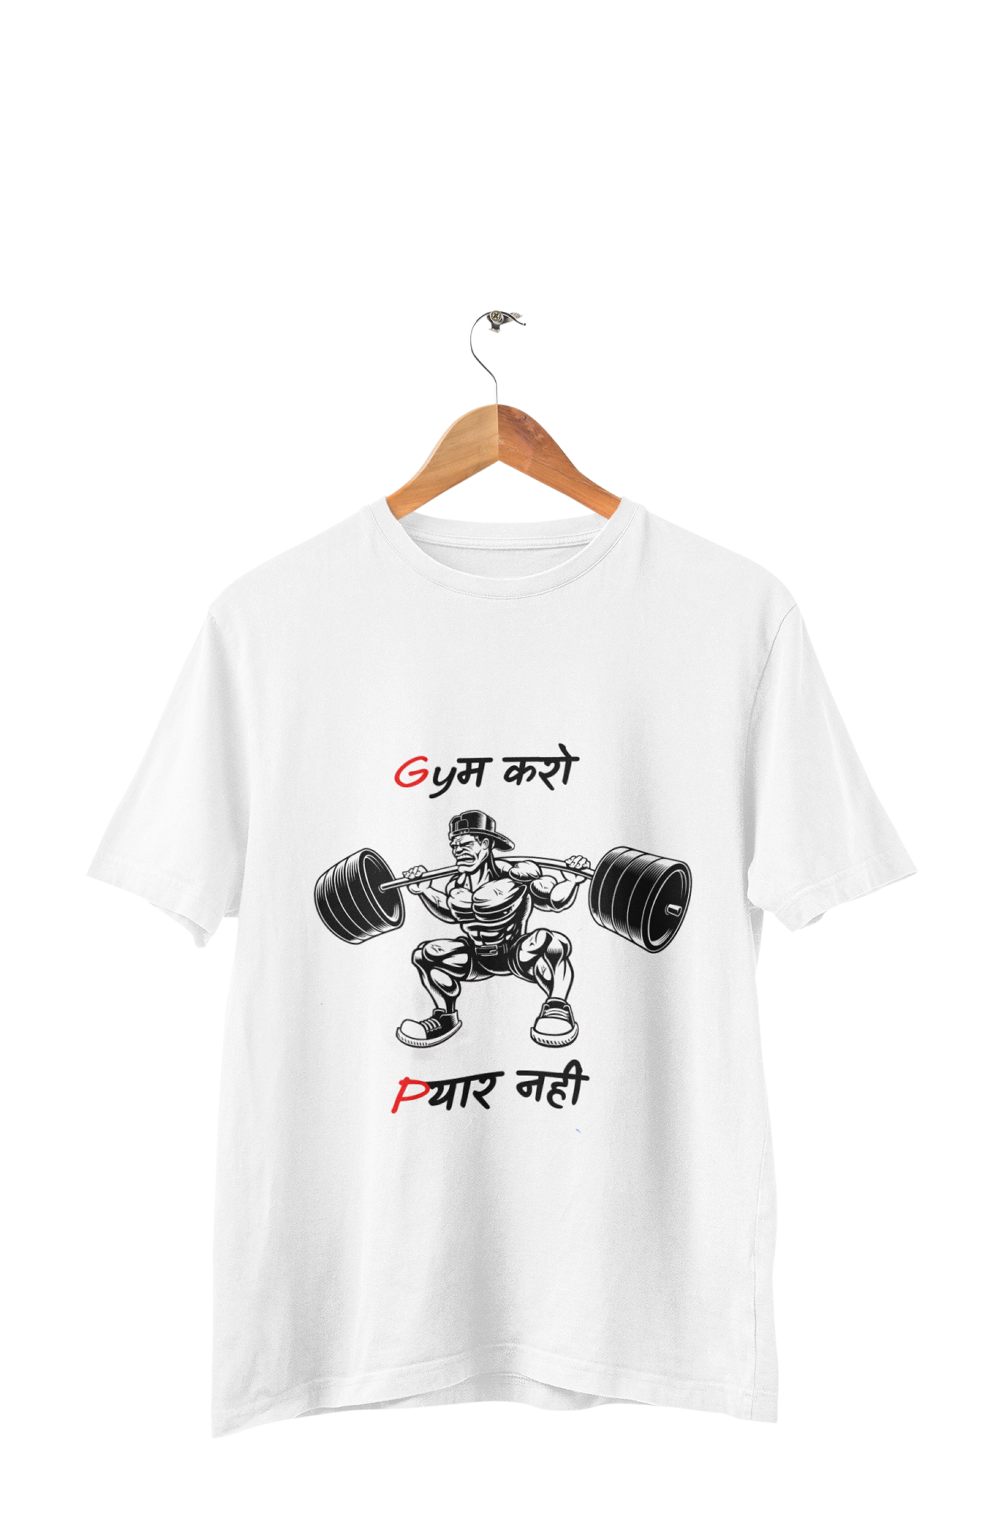 Gym Karo Pyaar Nahi T-shirt For Girls